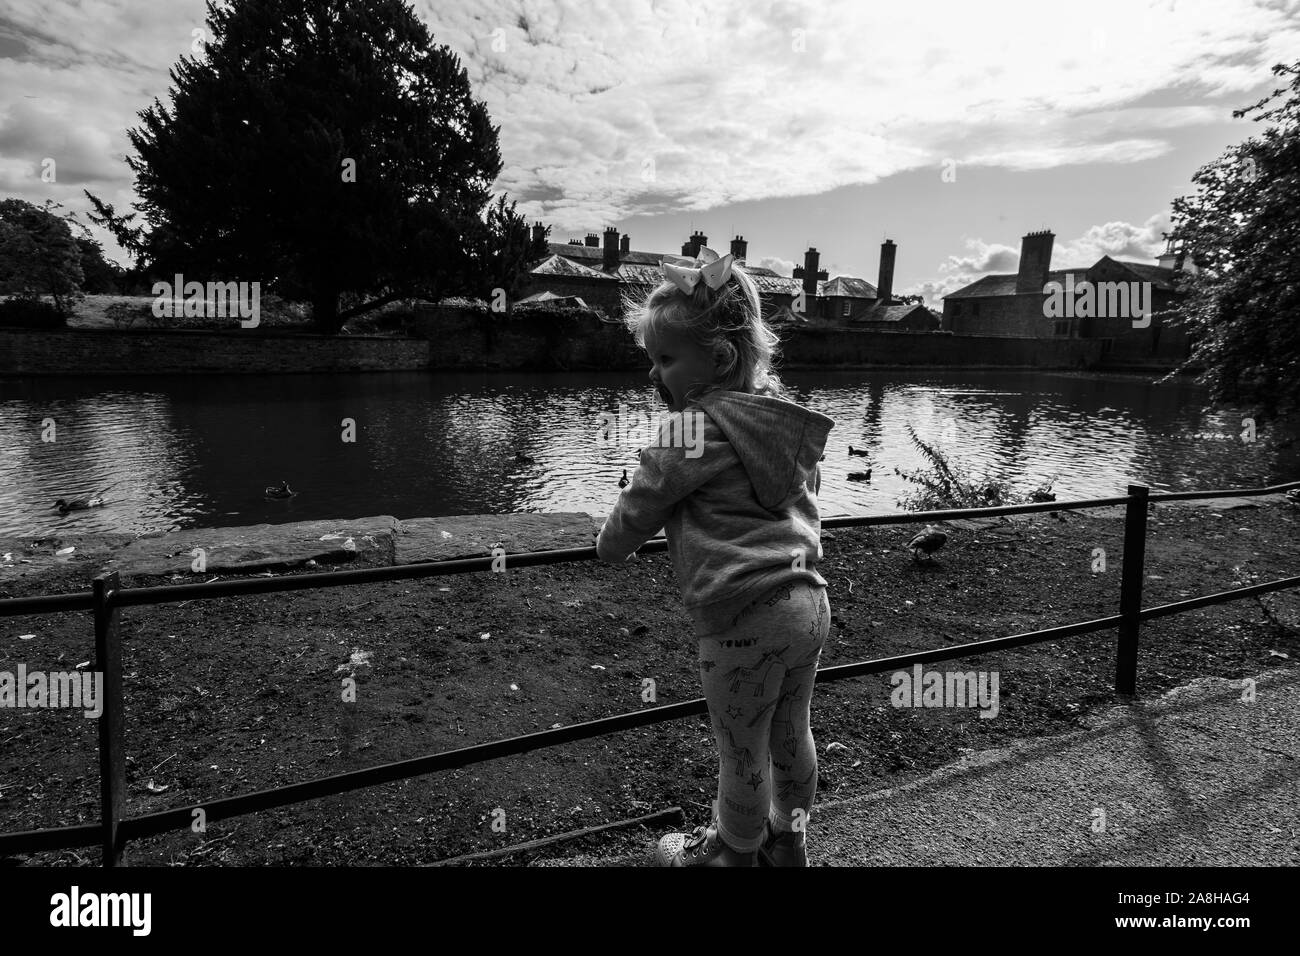 Ein kleines Mädchen erforscht die Gründe der Dunham Massey, Damwild und das Haus und die Gärten, Kind in der Landschaft UK suchen Stockfoto